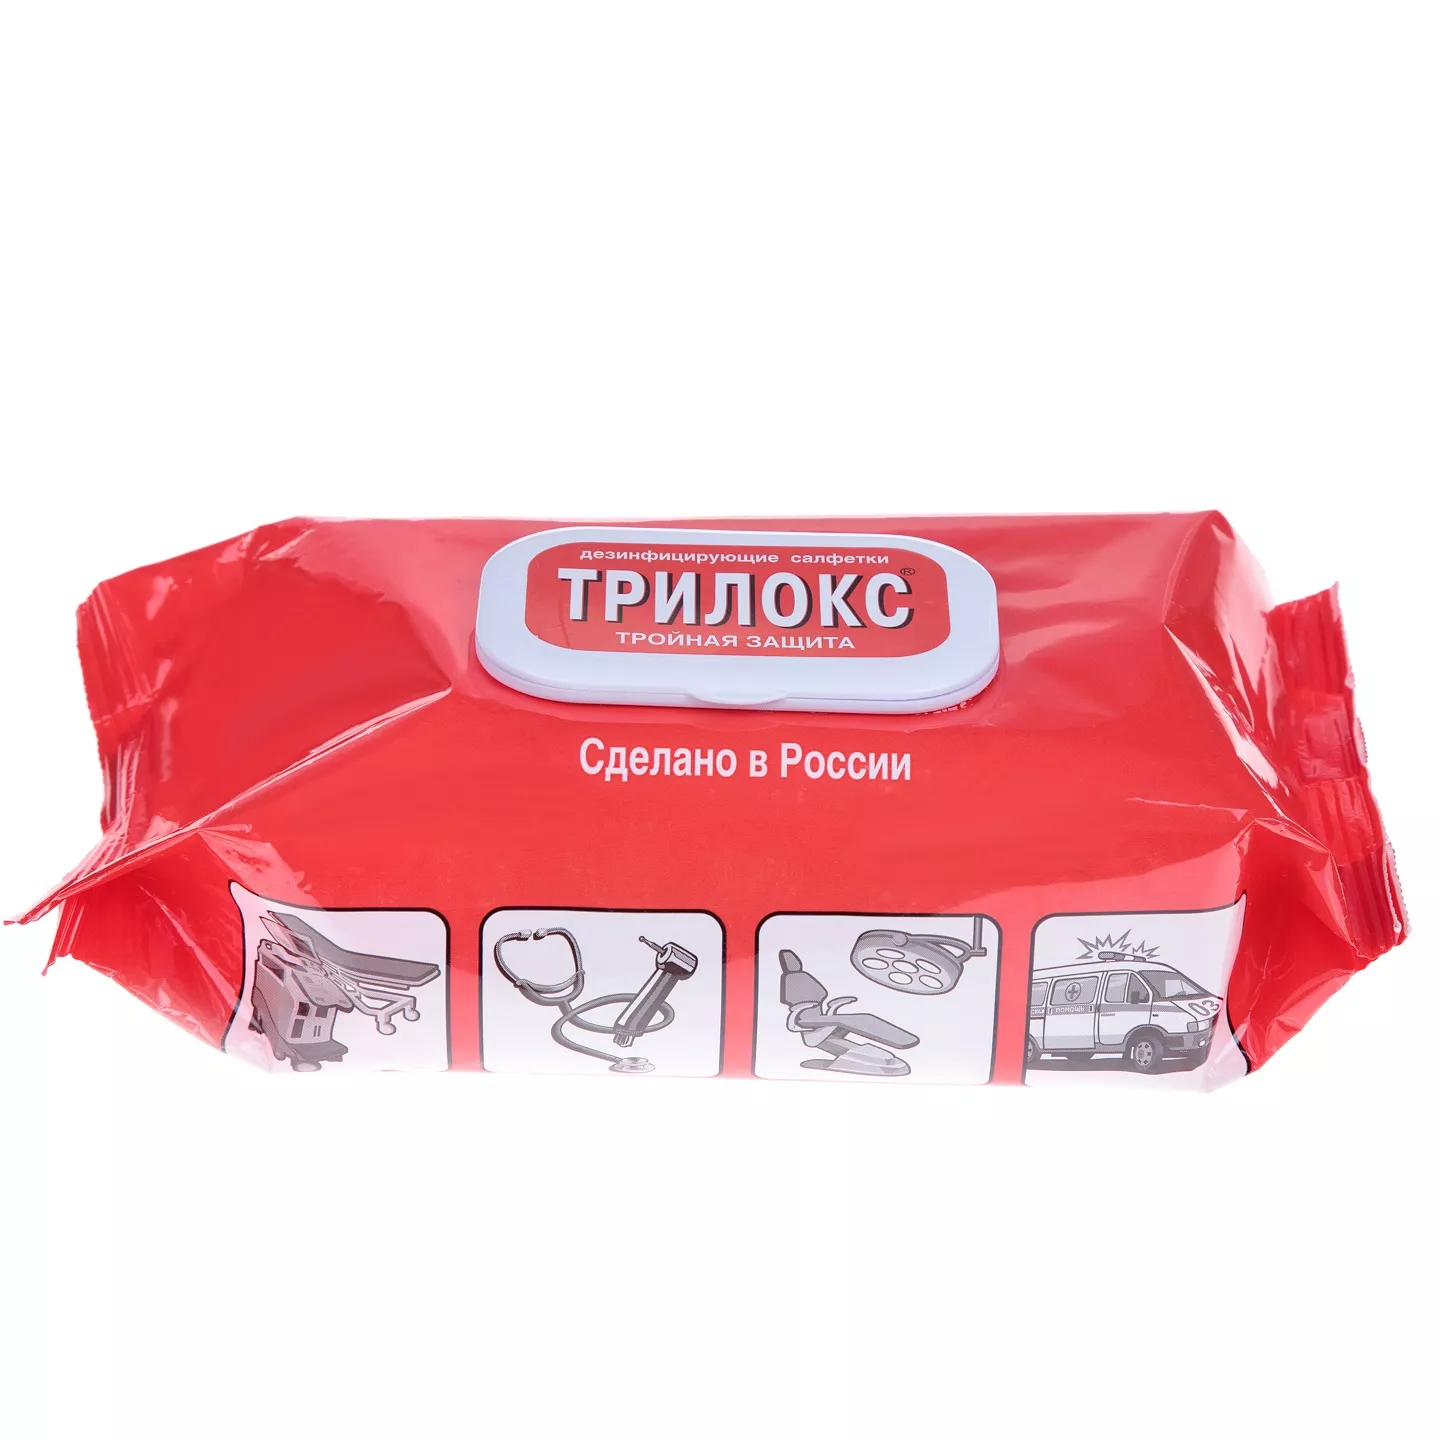 Трилокс салфетки №120, дезинфицирующие, мягкая упаковка